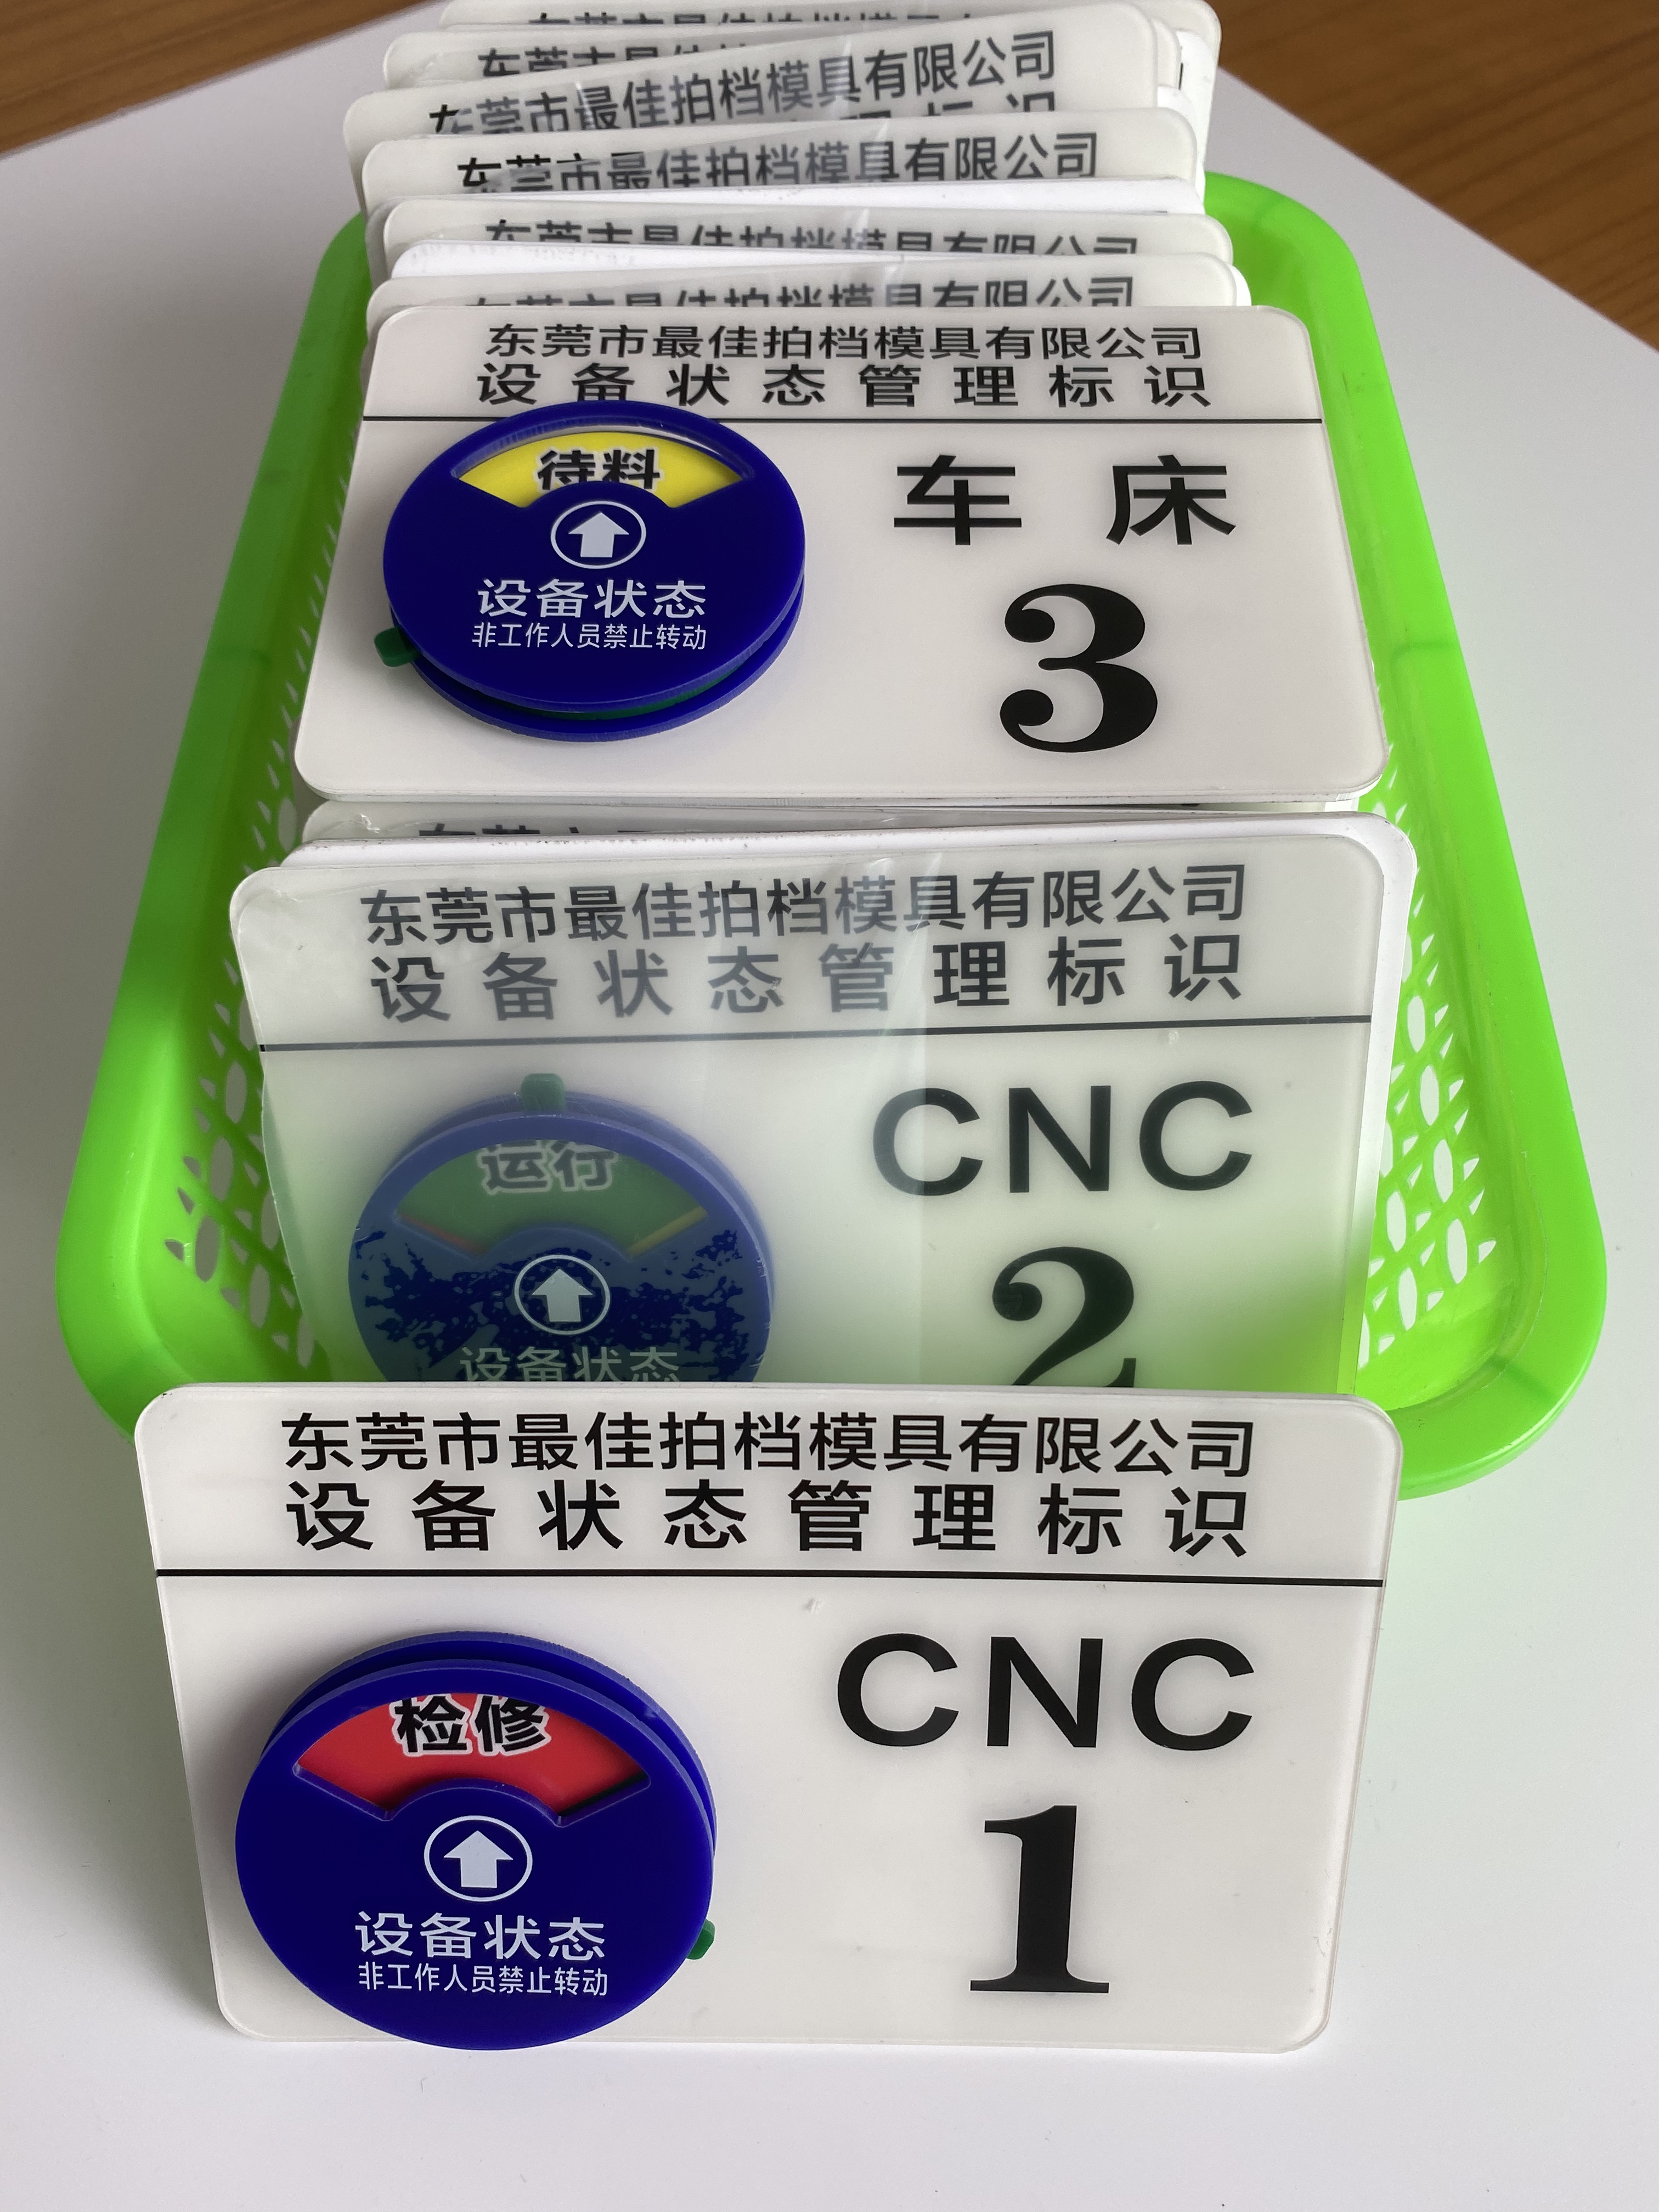 定制亚克力仪器号码机器床机台编号CNC运行管理卡设备状态标识牌